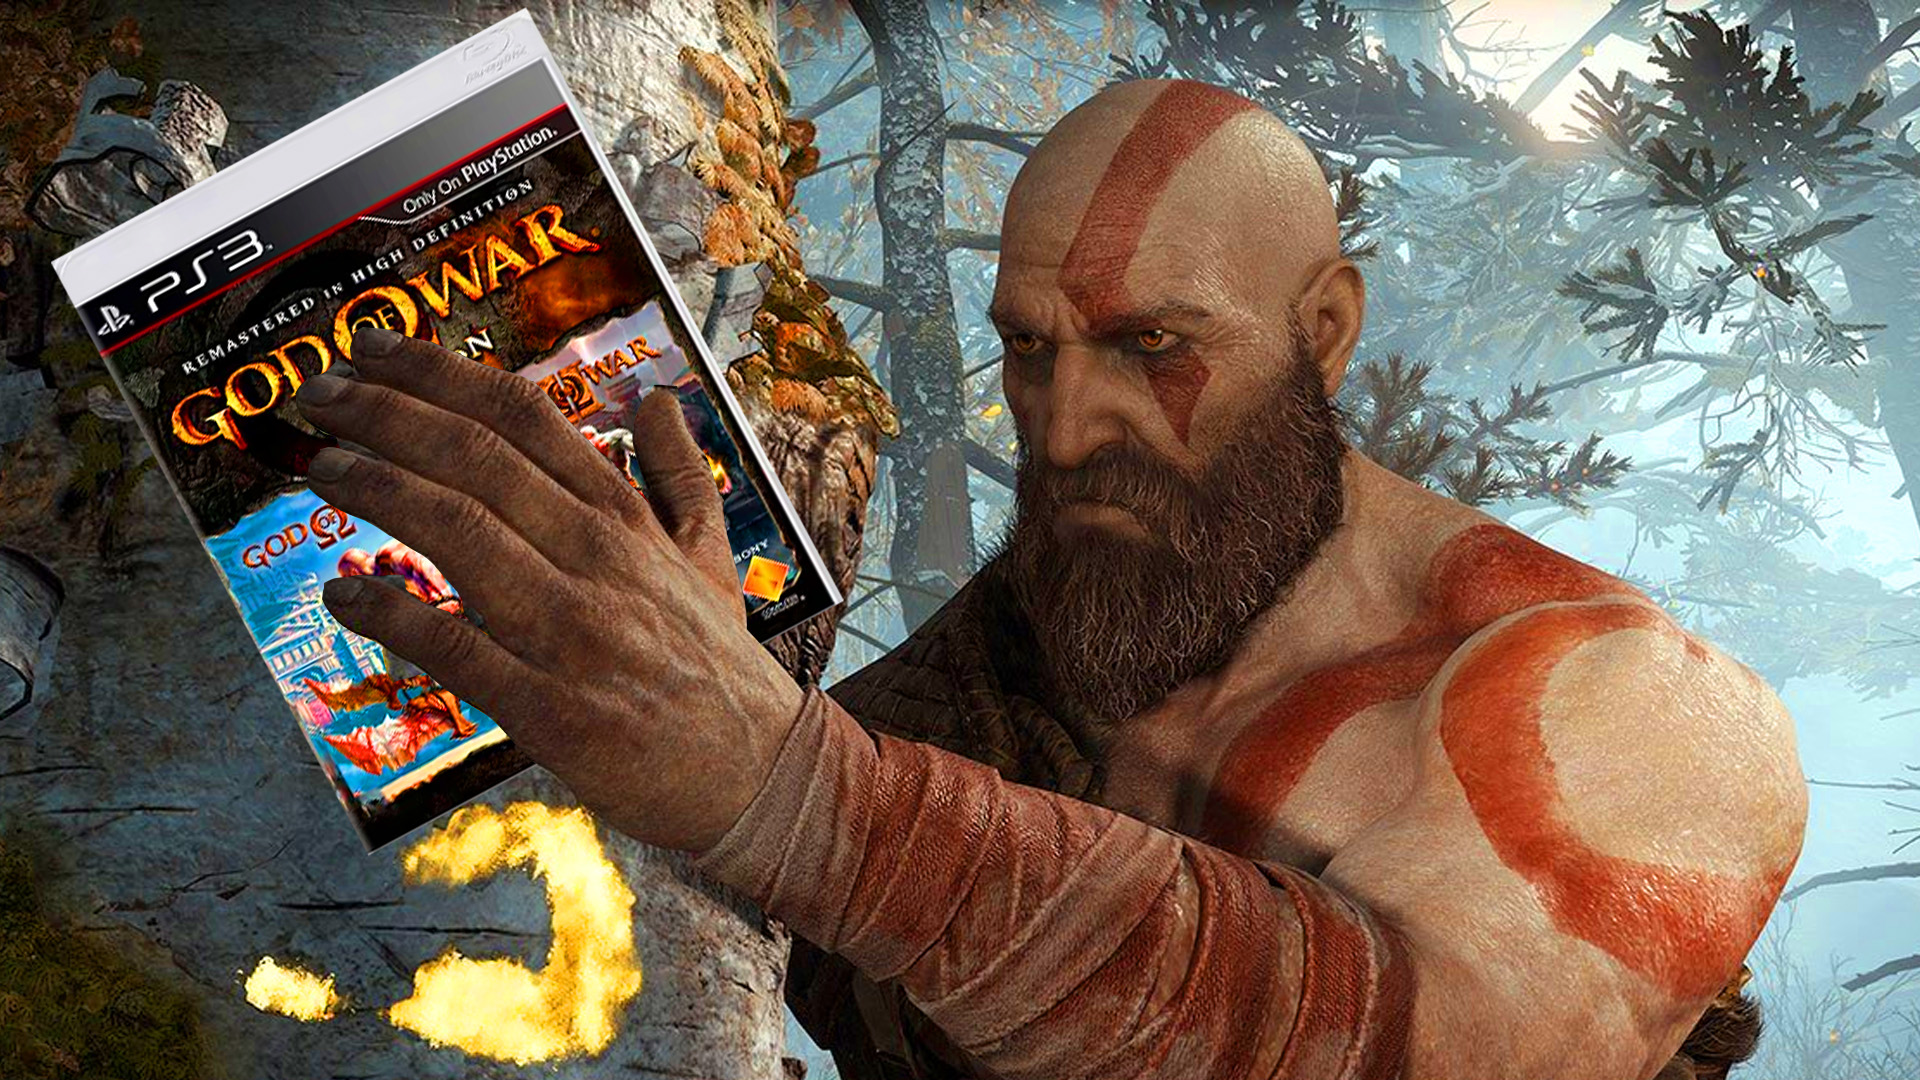 OG God Of War trilogy being remastered for PS5, says insider